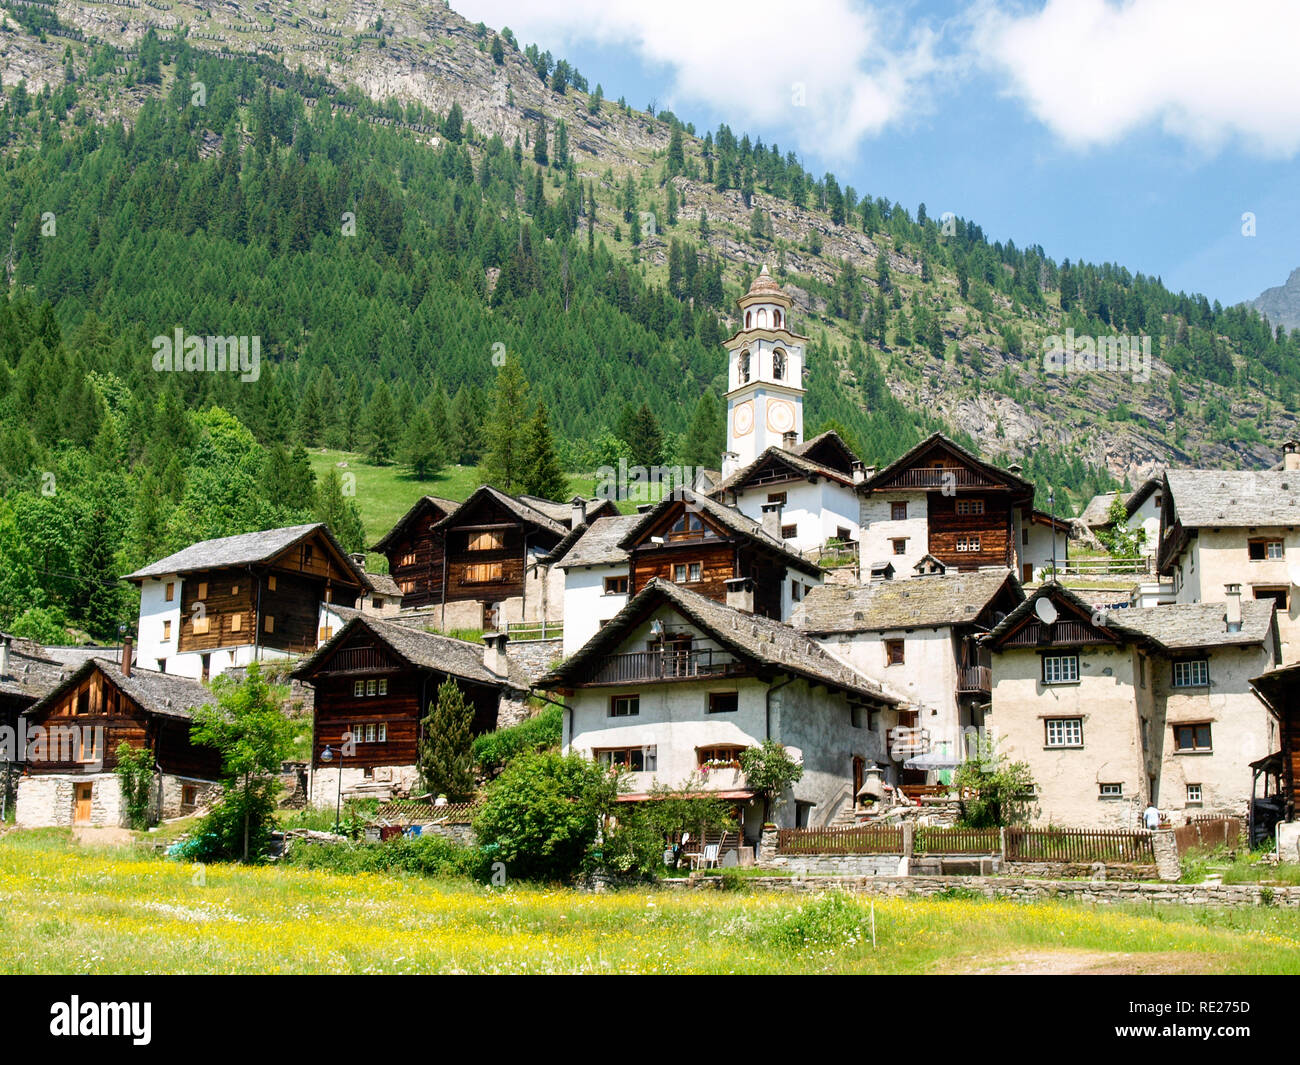 Vallemaggia, Suiza: las imágenes del típico valle del Ticino. Foto de stock